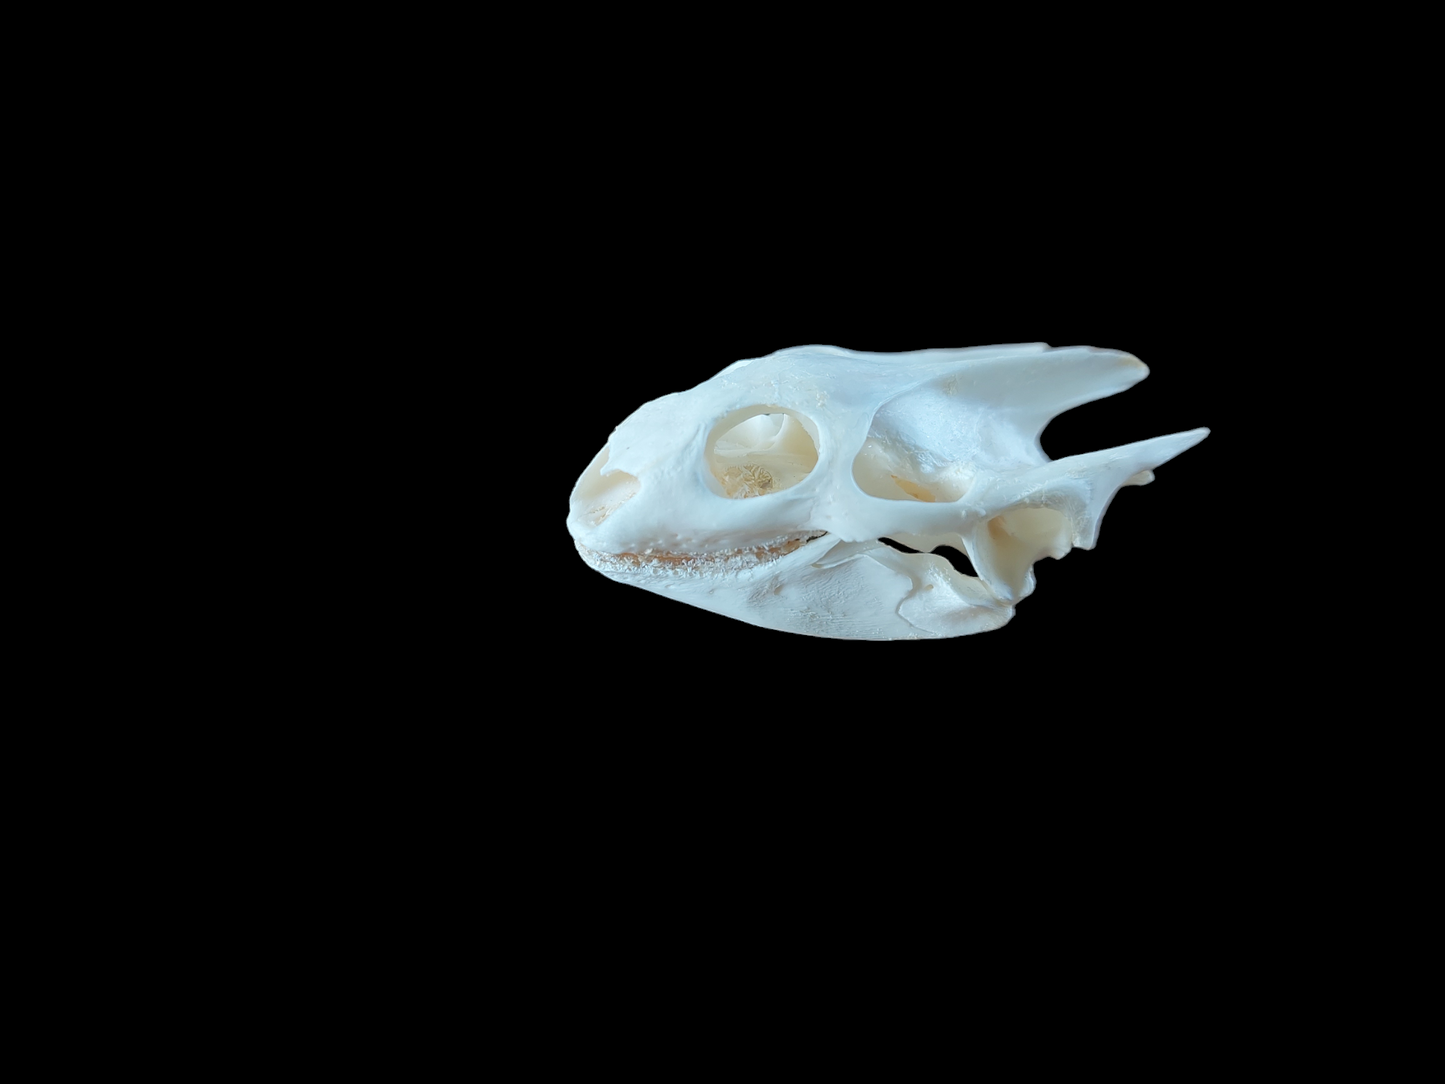 Red-eared slider turtle skull